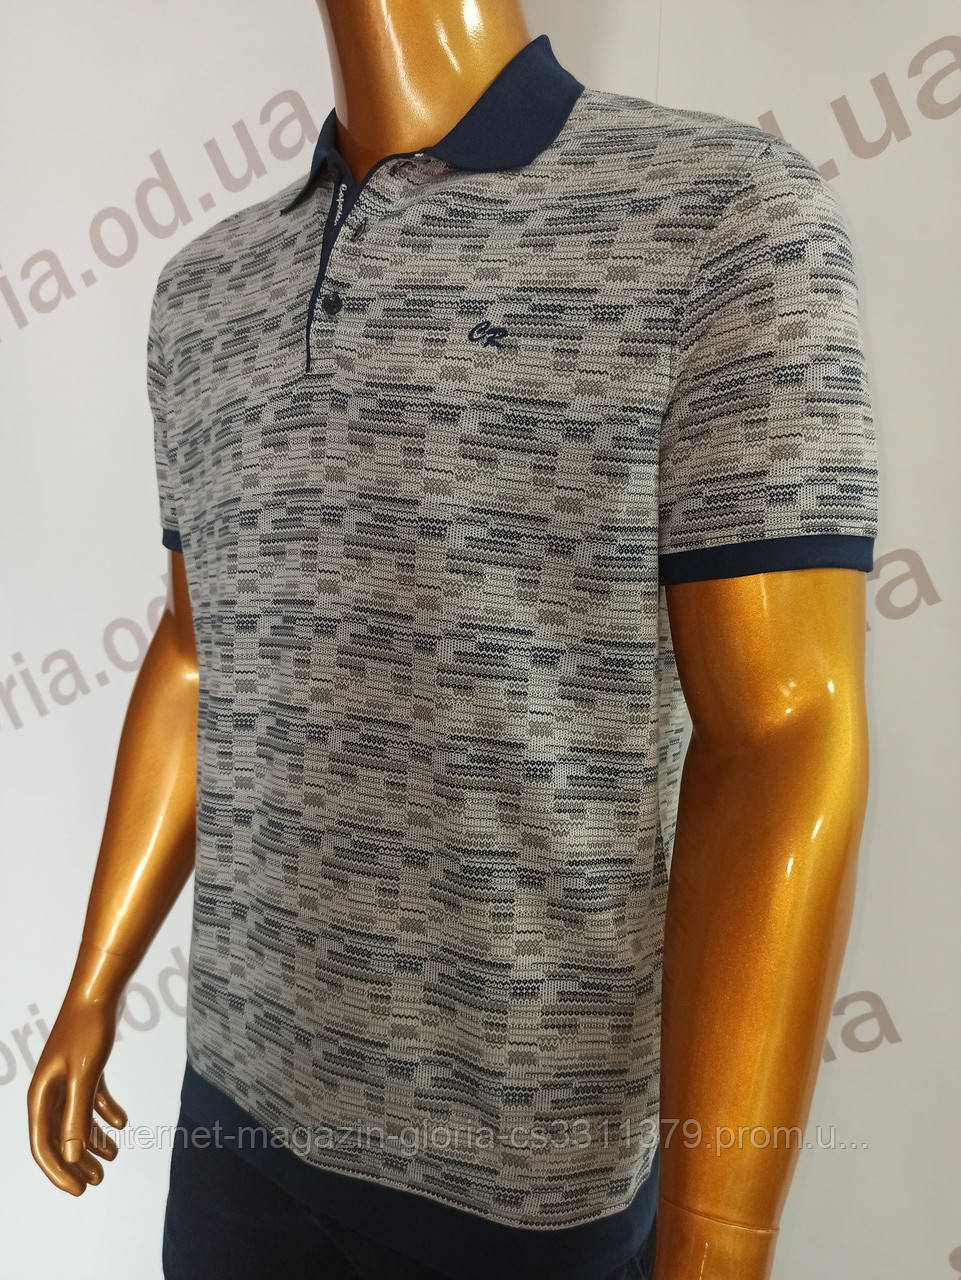 Чоловіча футболка поло Caporicco. PSL-8831. Розміри: Батал 2XL(2),3XL,4XL.